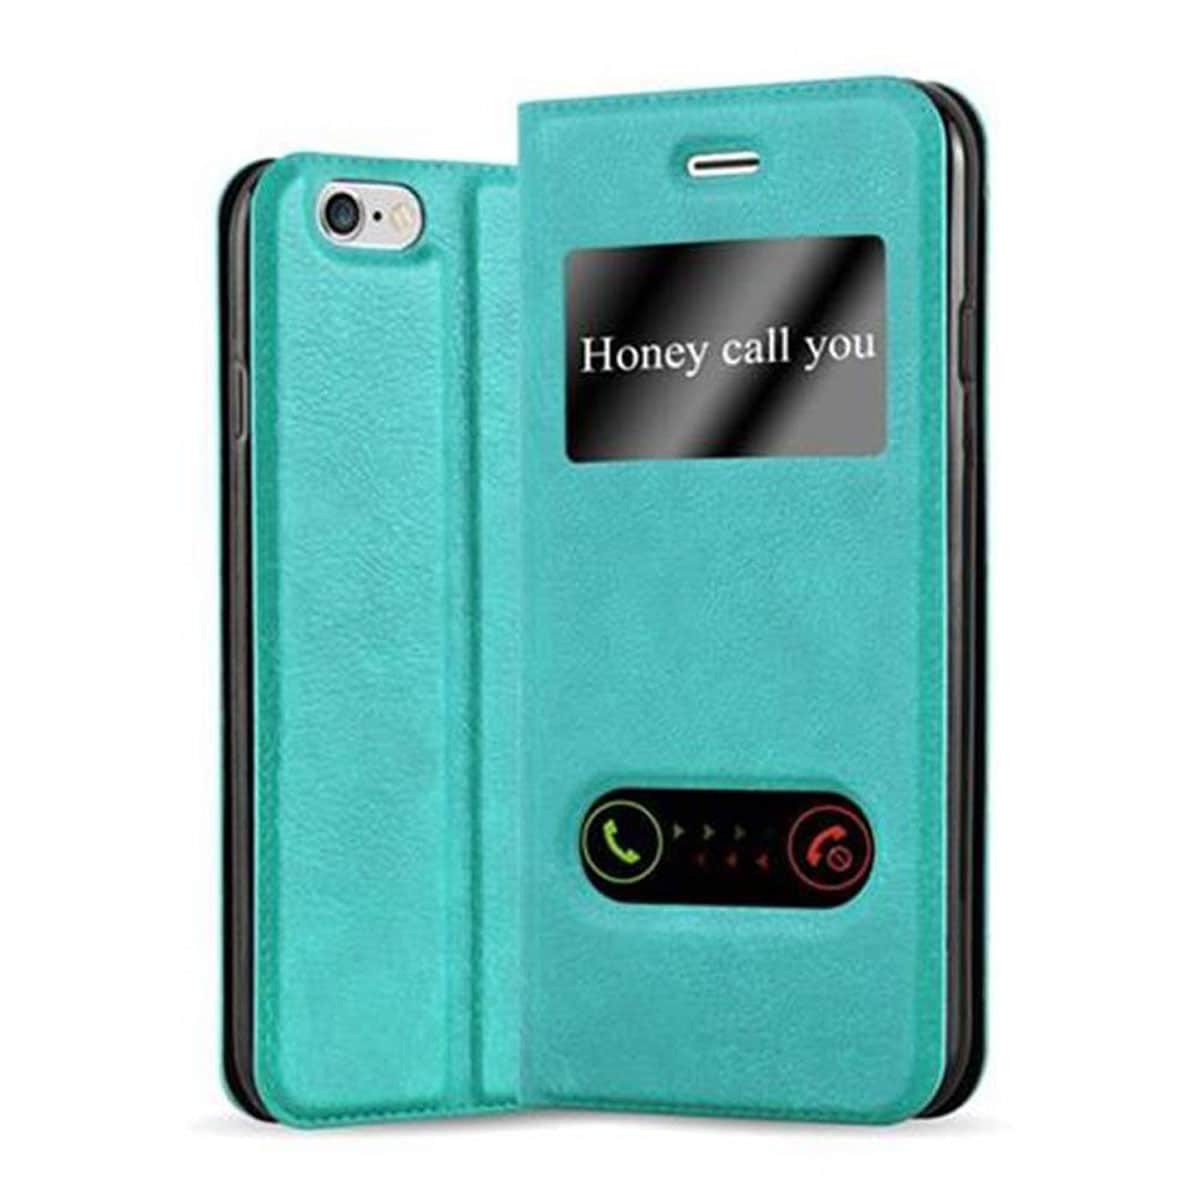 iPhone 6 / 6S lommebokdeksel cover (turkis) - Elkjøp